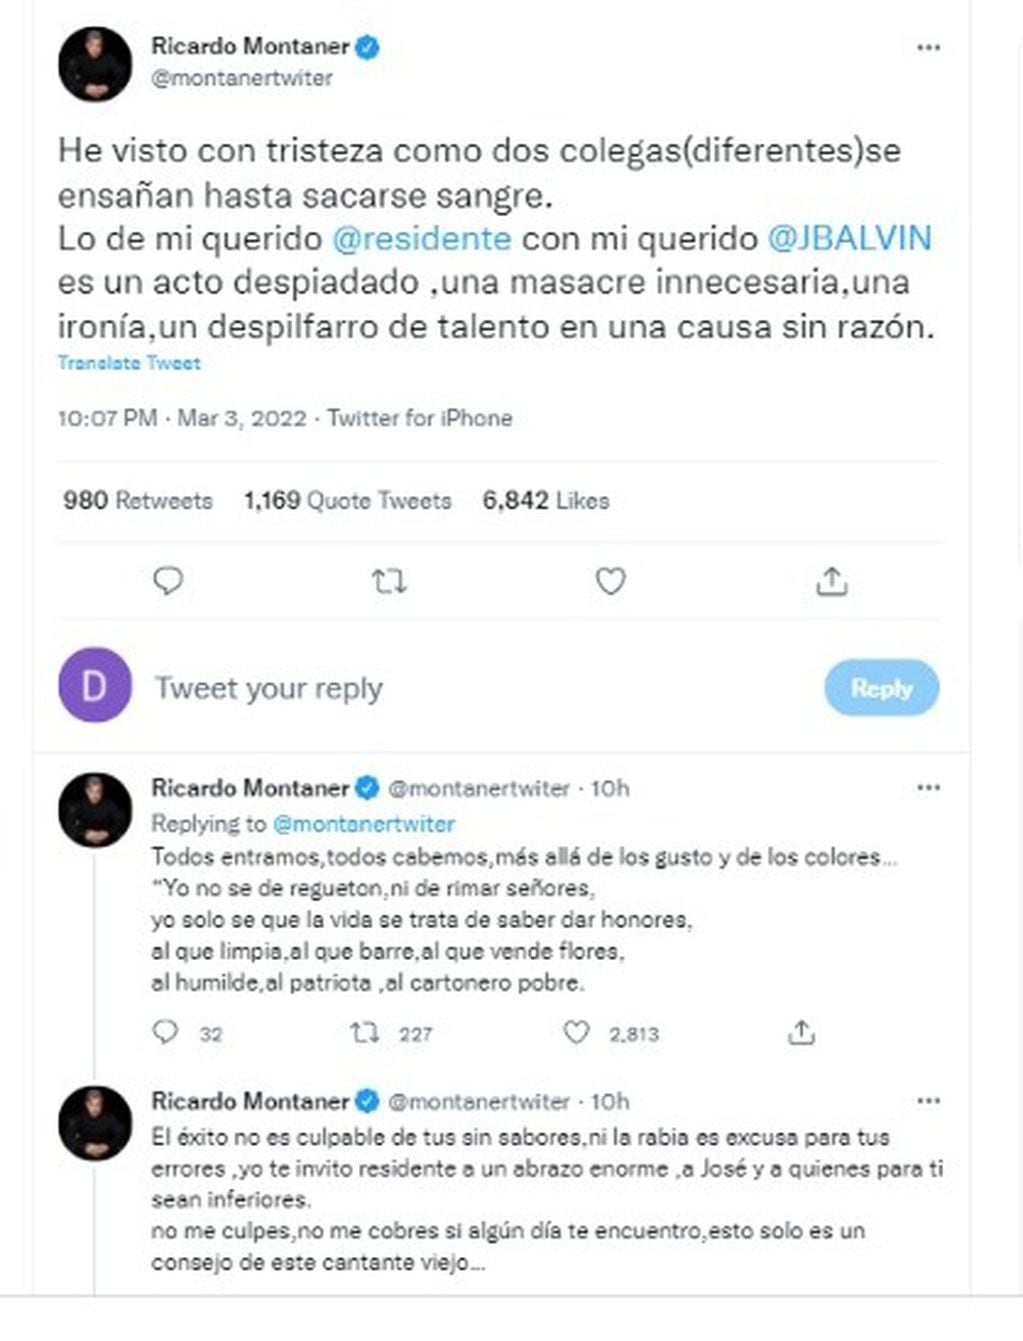 Los primeros tweets de Ricardo sobre el tema